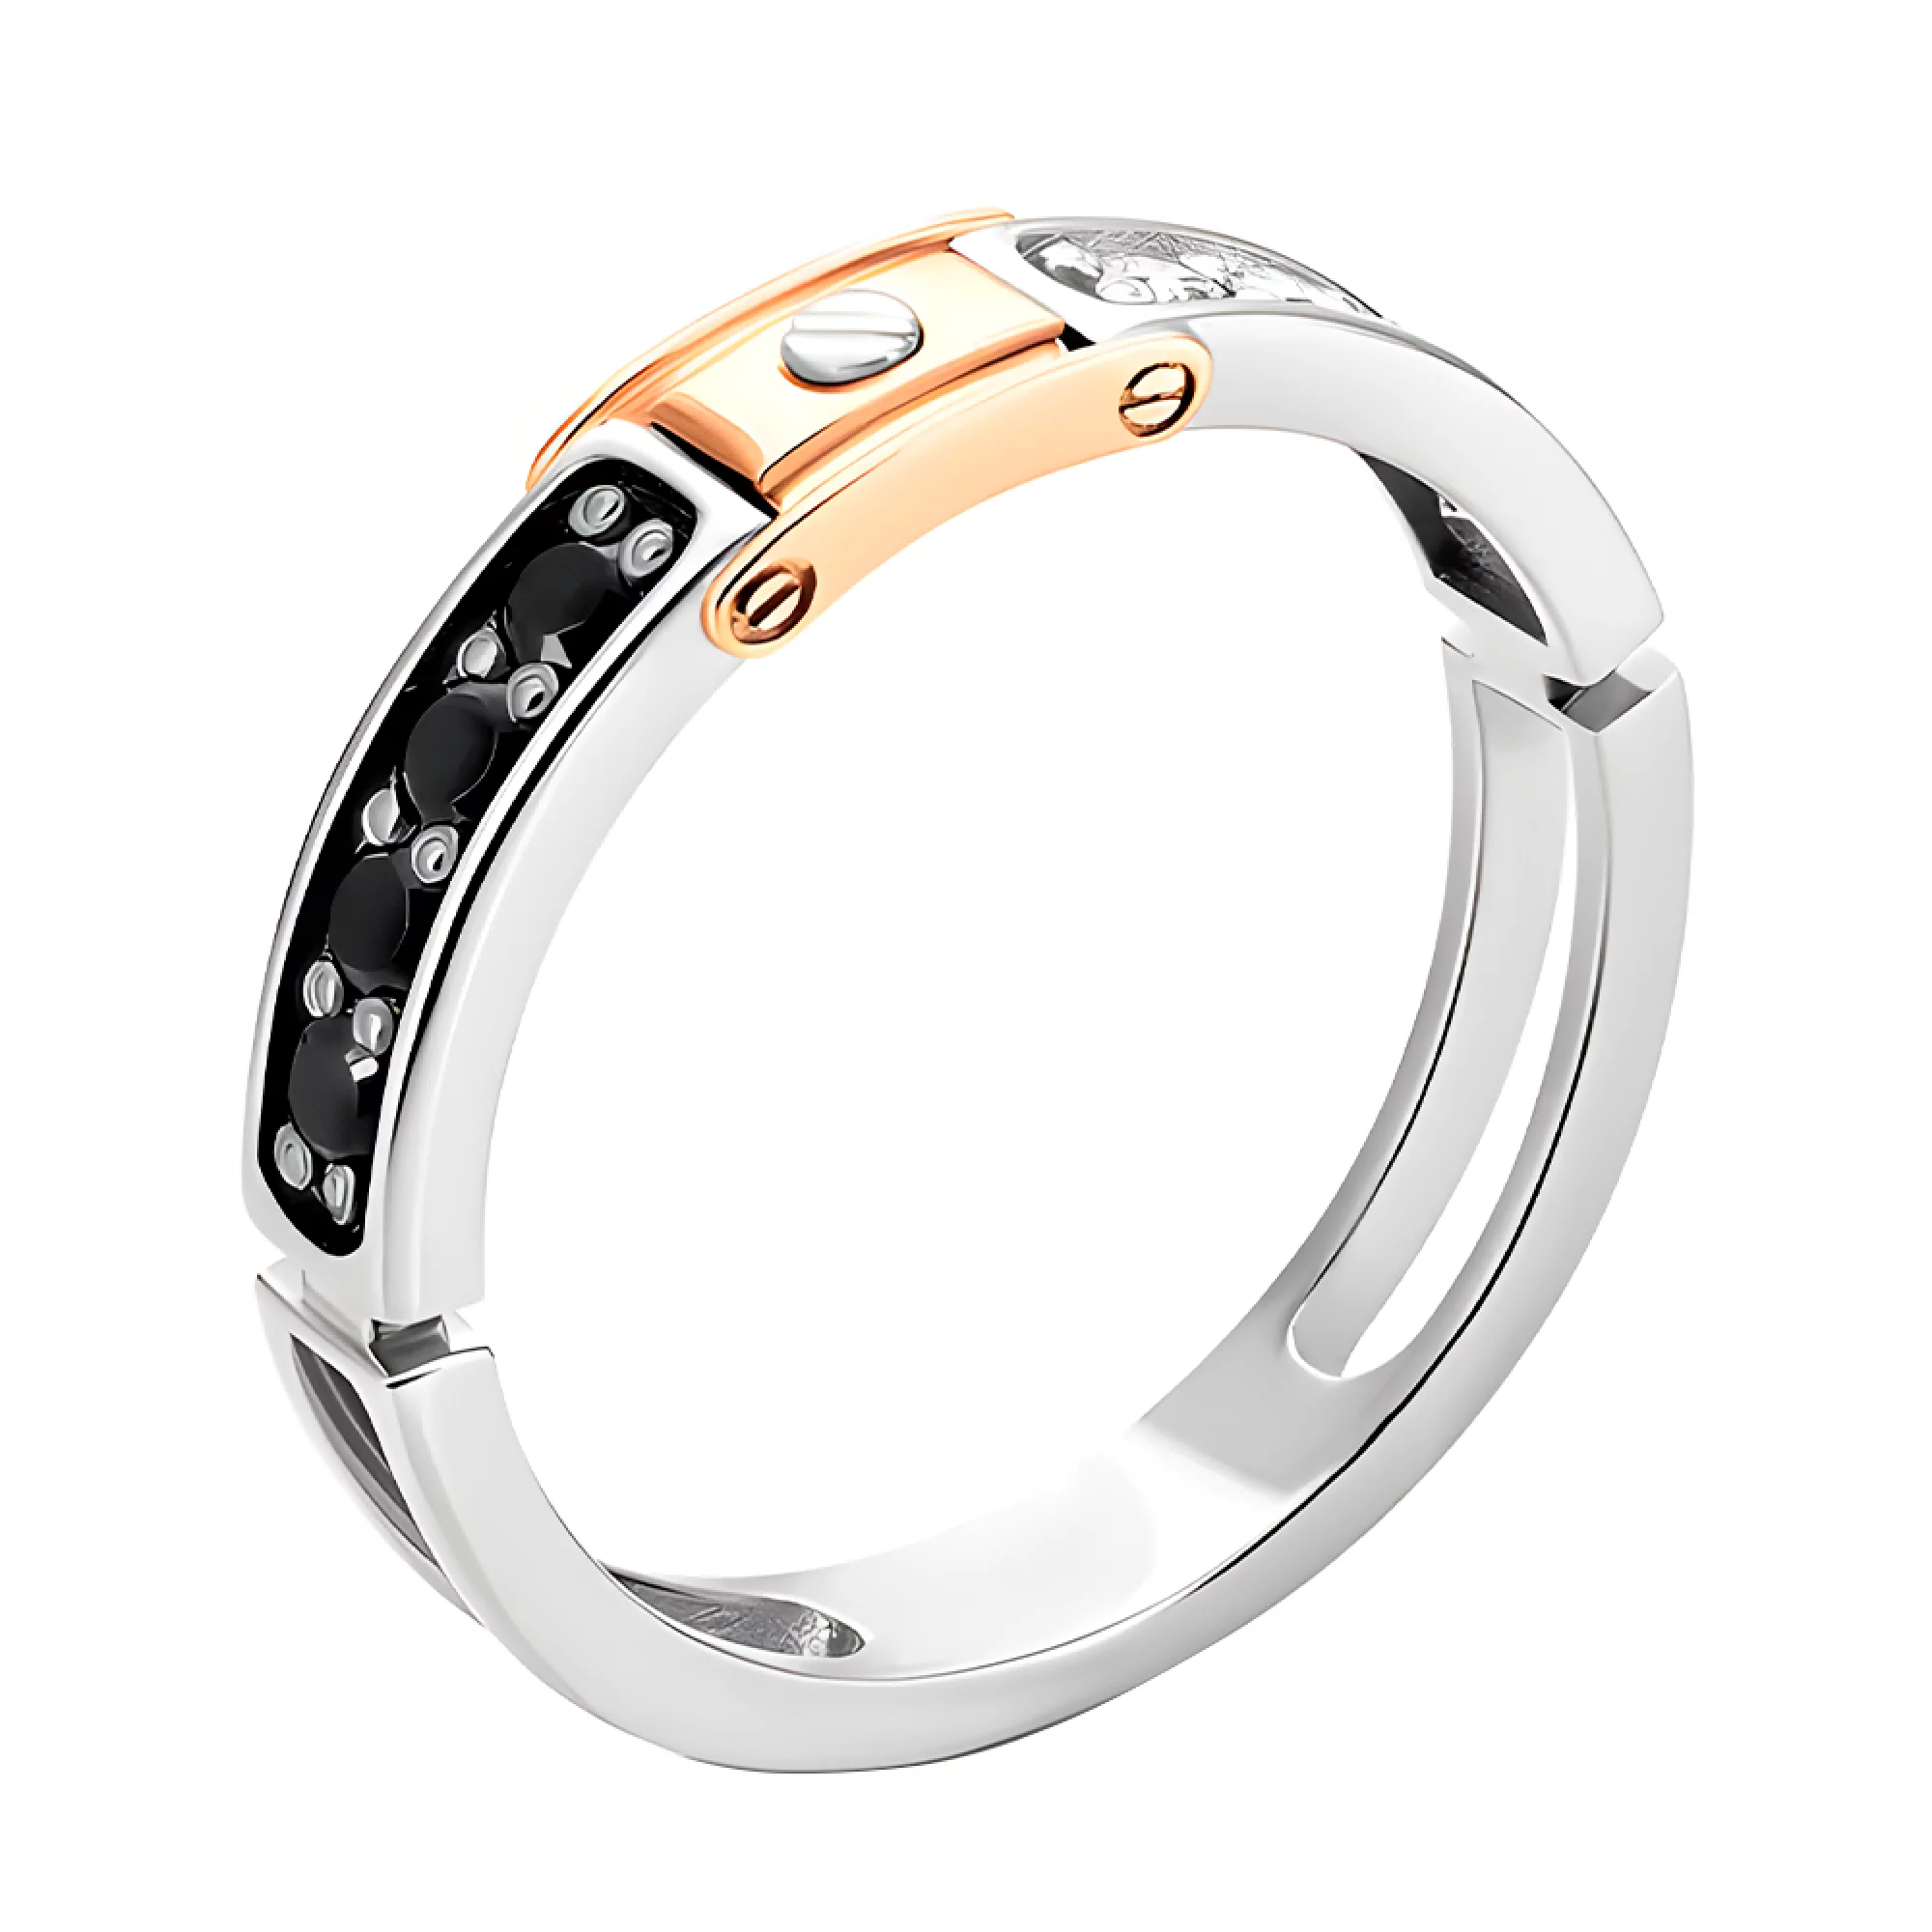 Перстень из комбинированного золота с черным и белым фианитом - 907513 – изображение 1